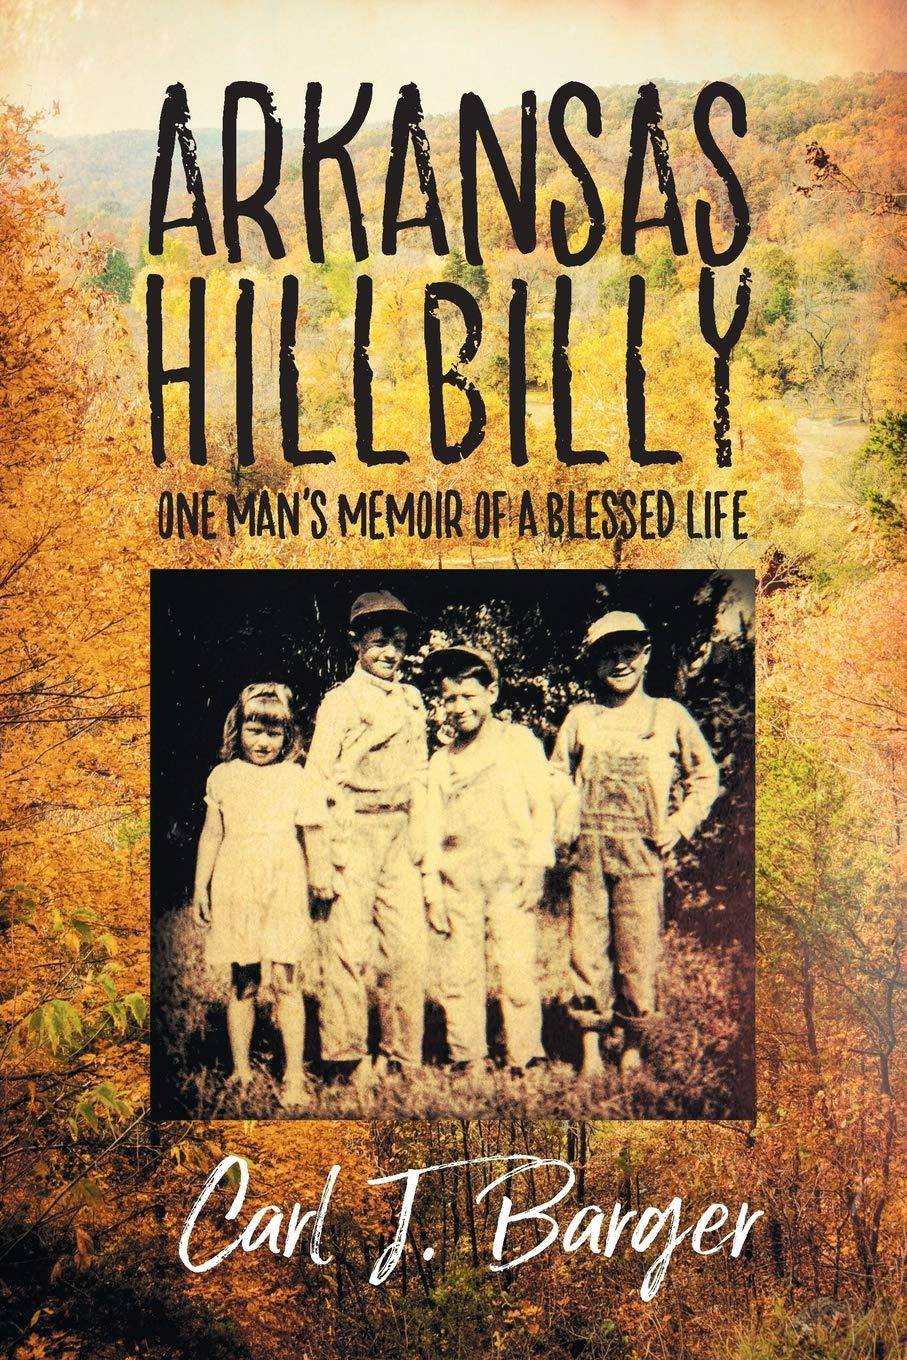 Arkansas Hillbilly: One Man's Memoir of a Blessed Life - SureShot Books Publishing LLC